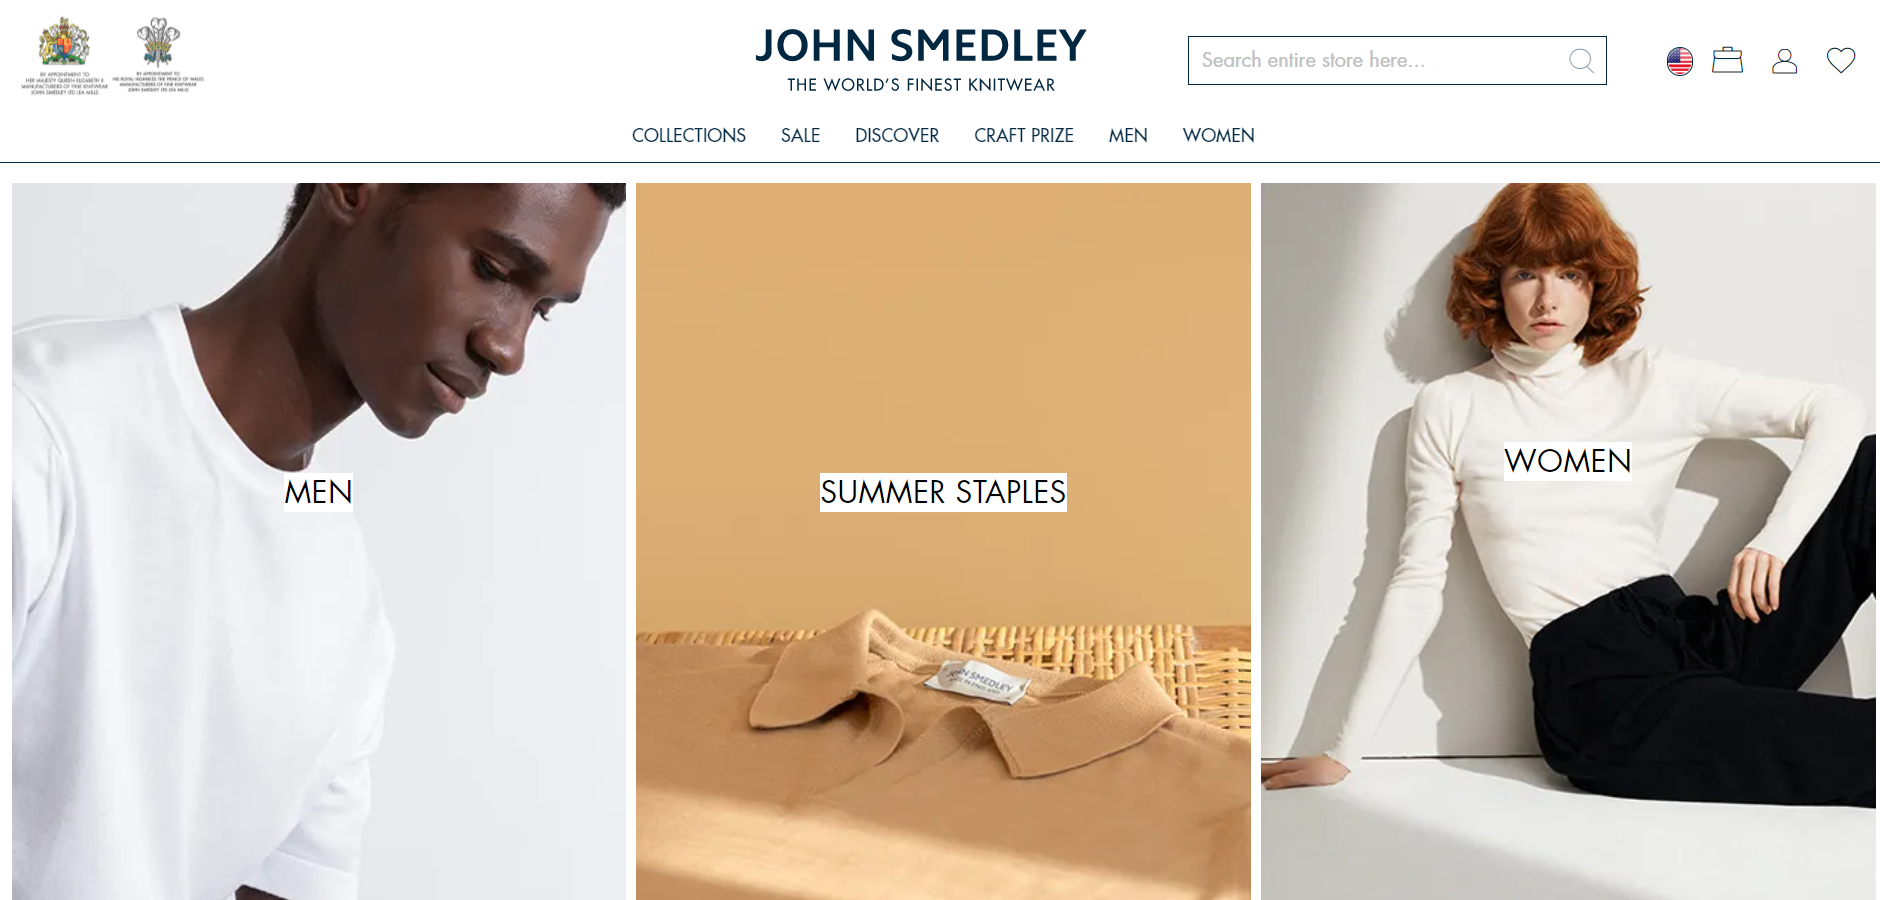 200多年历史的英国皇室御用针织品牌 John Smedley 以数字渠道大力拓展中国市场